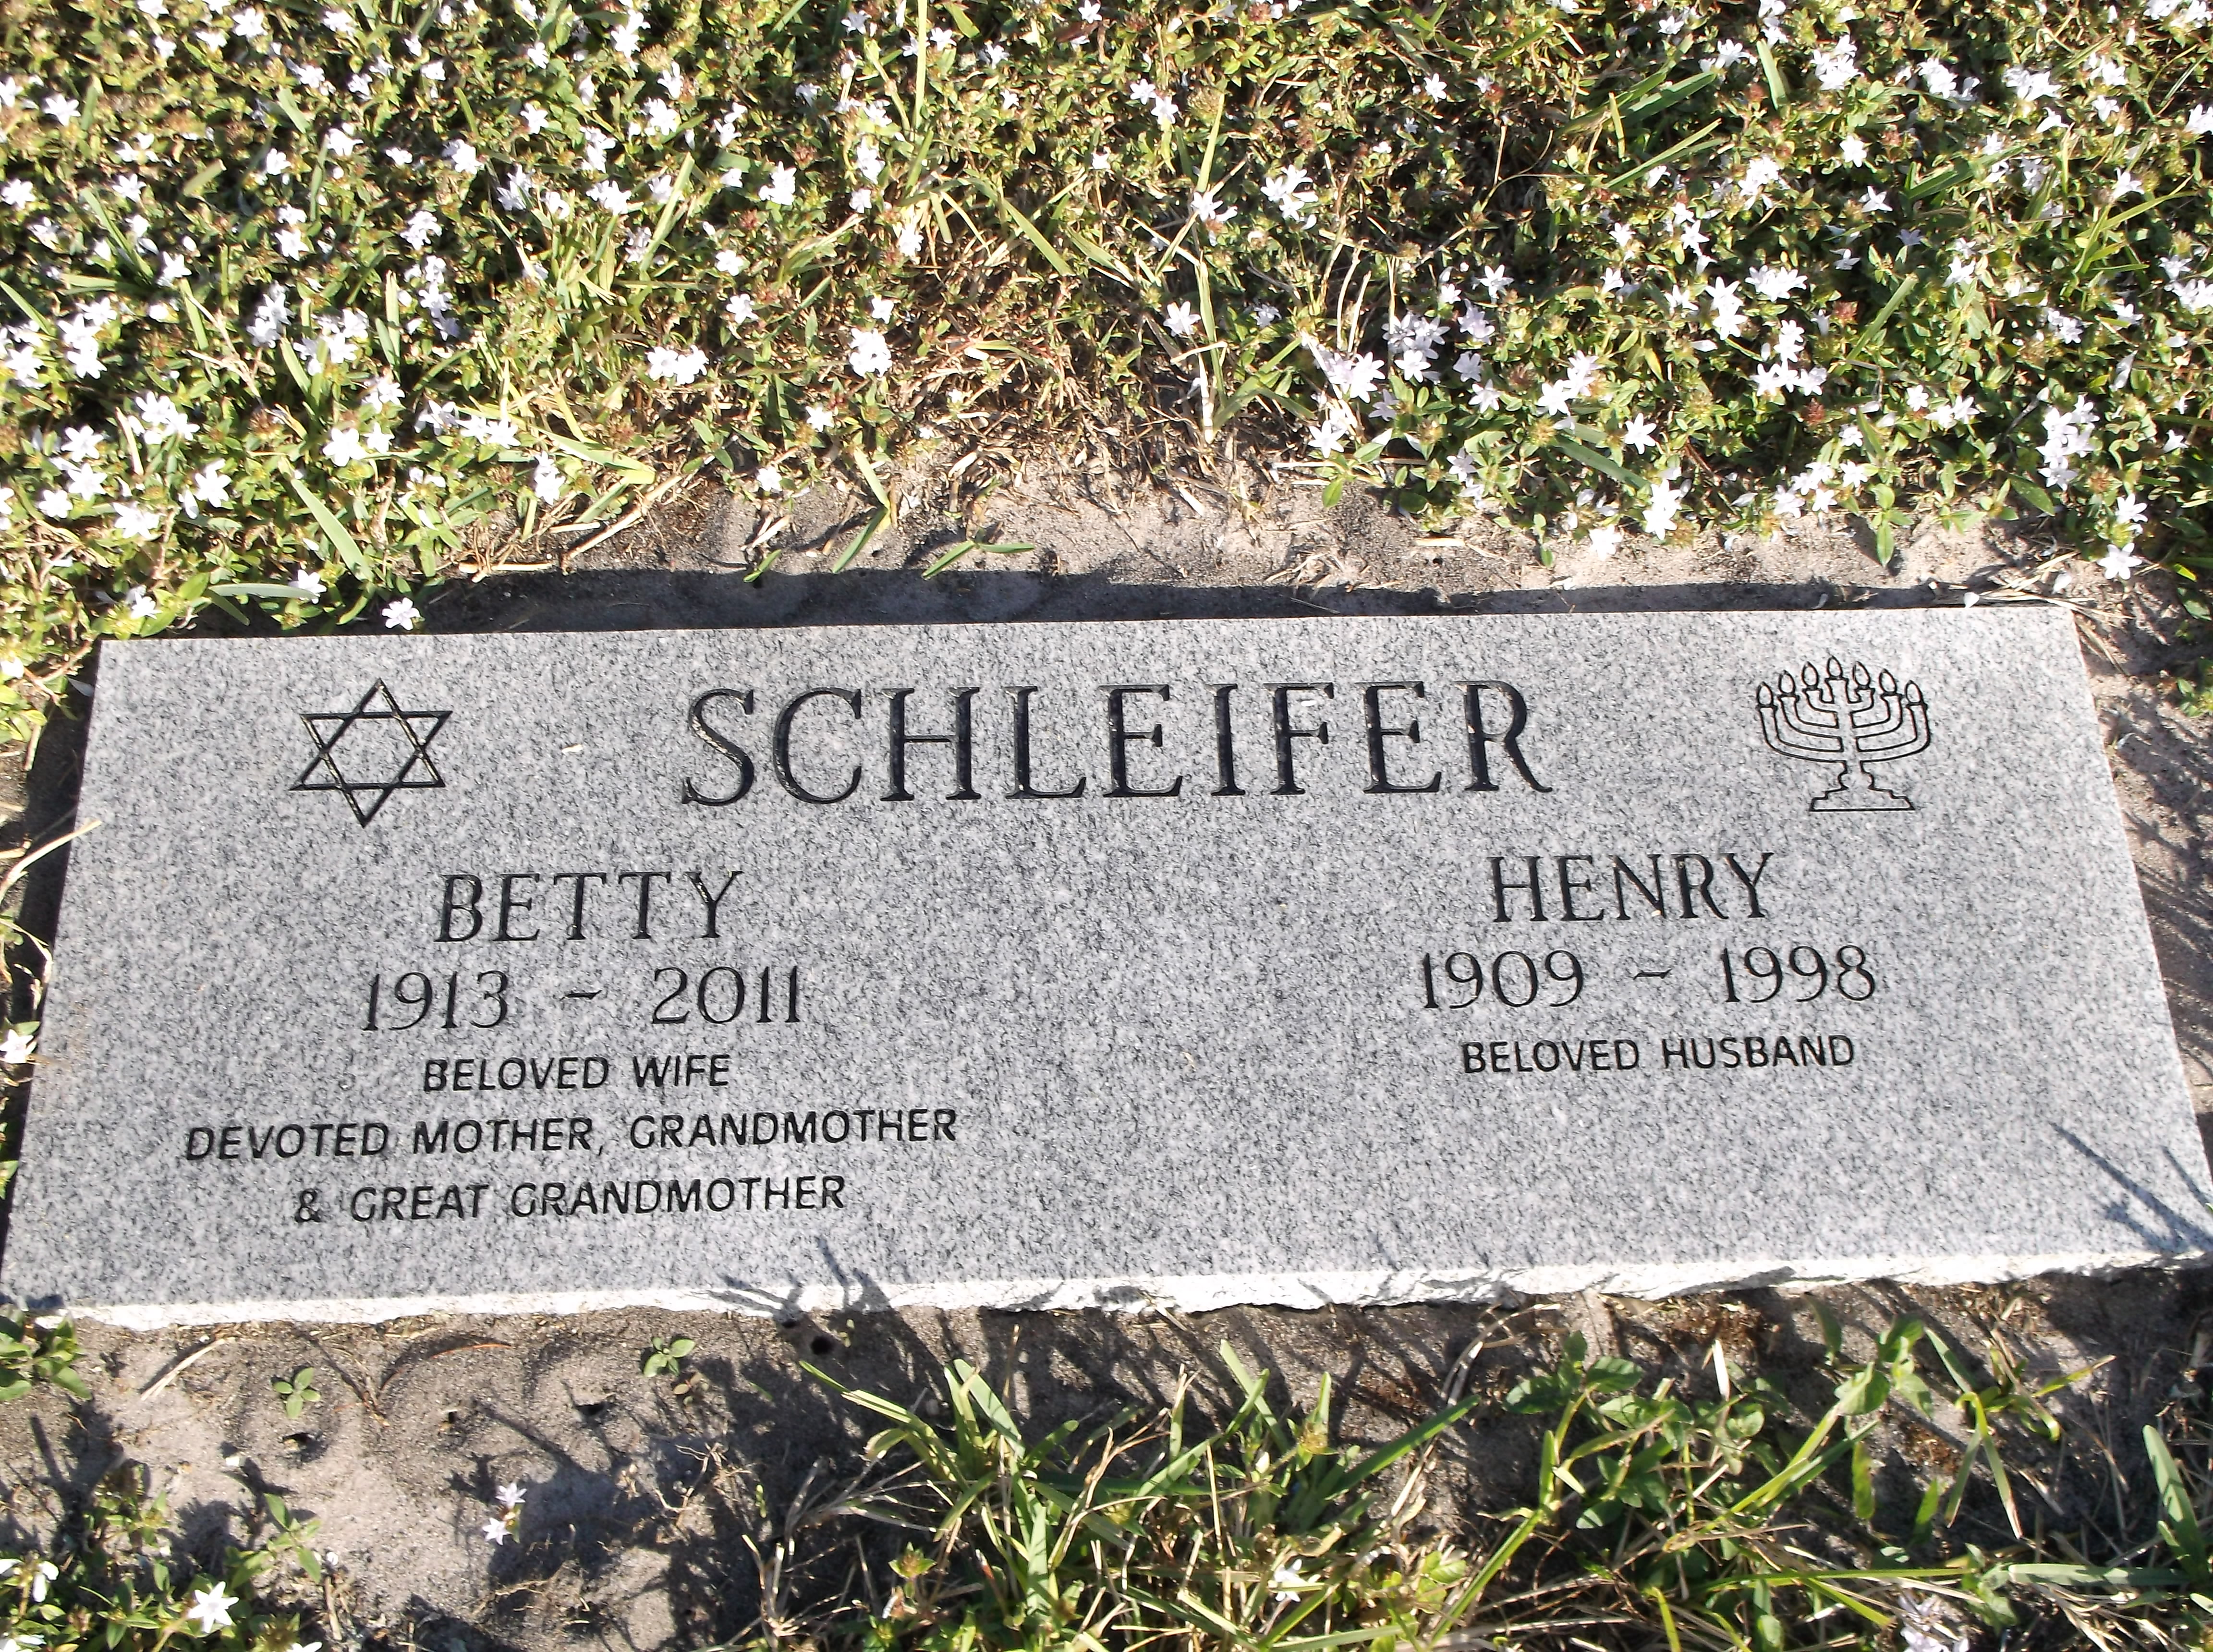 Henry Schleifer